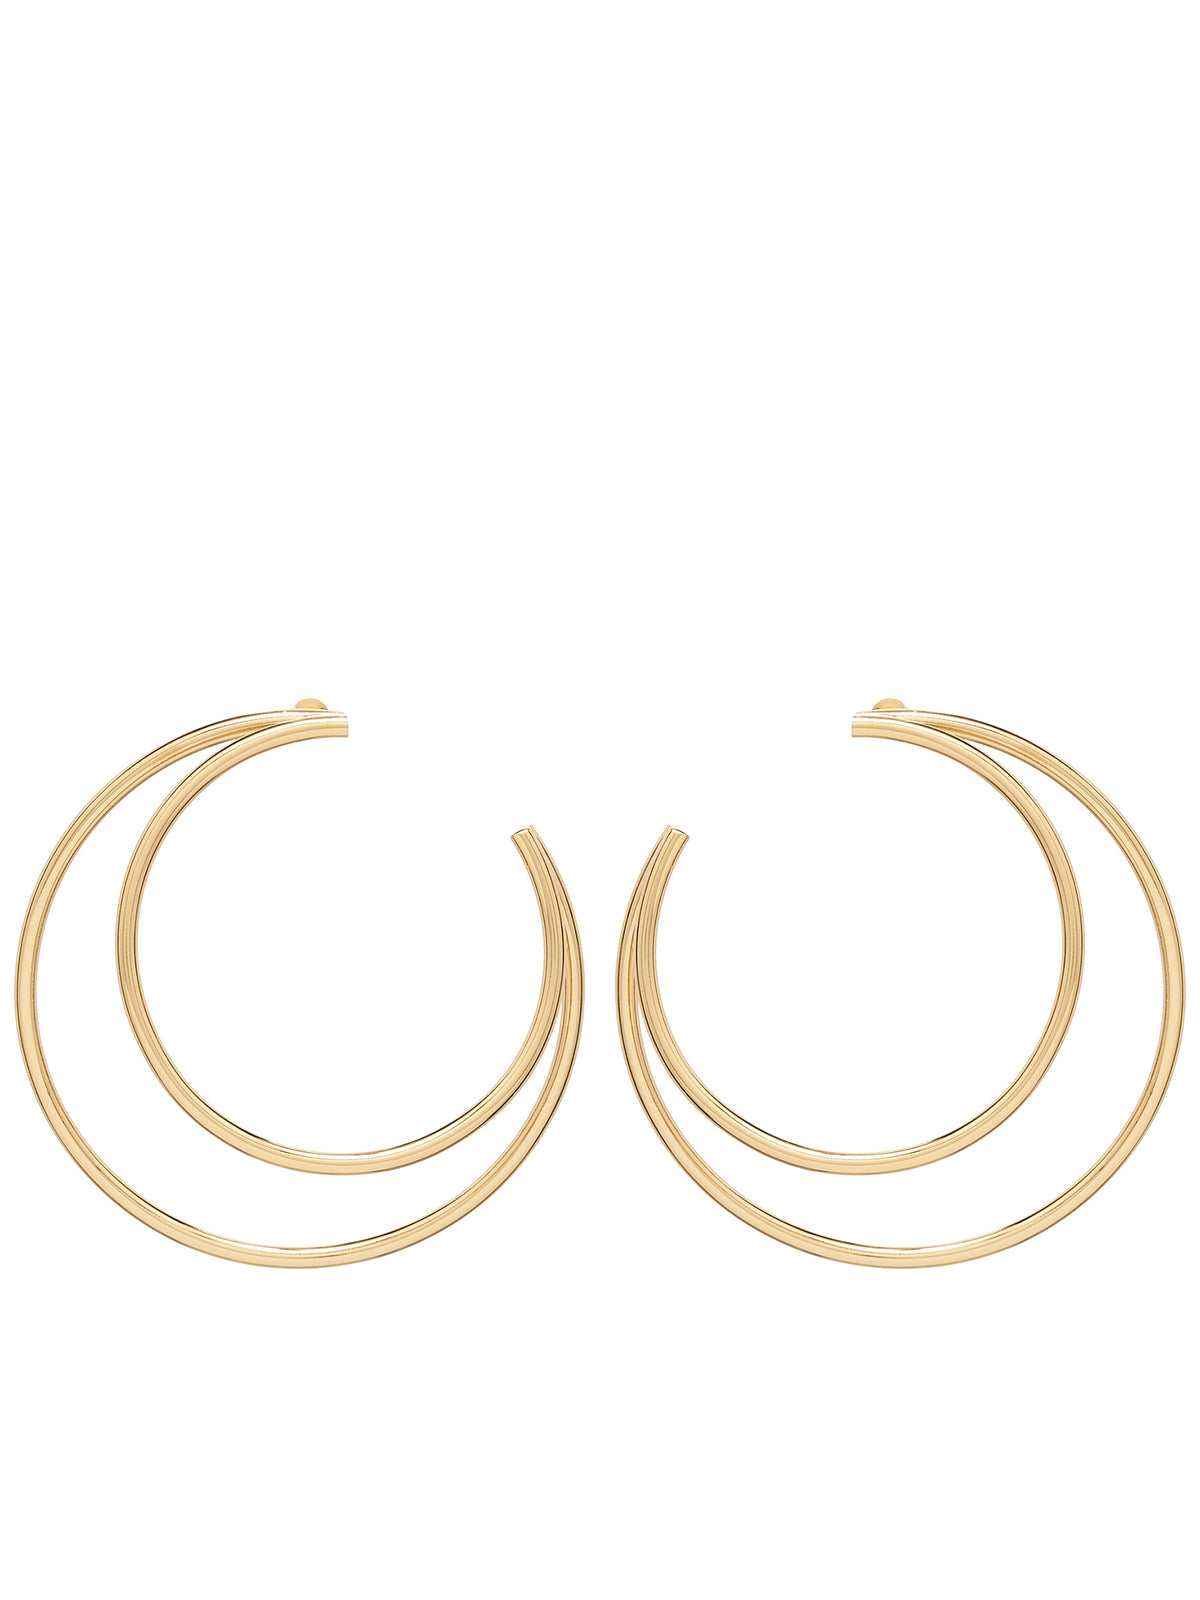 Small Moon Earrings (JW150W-OTHTR012-GOLD)